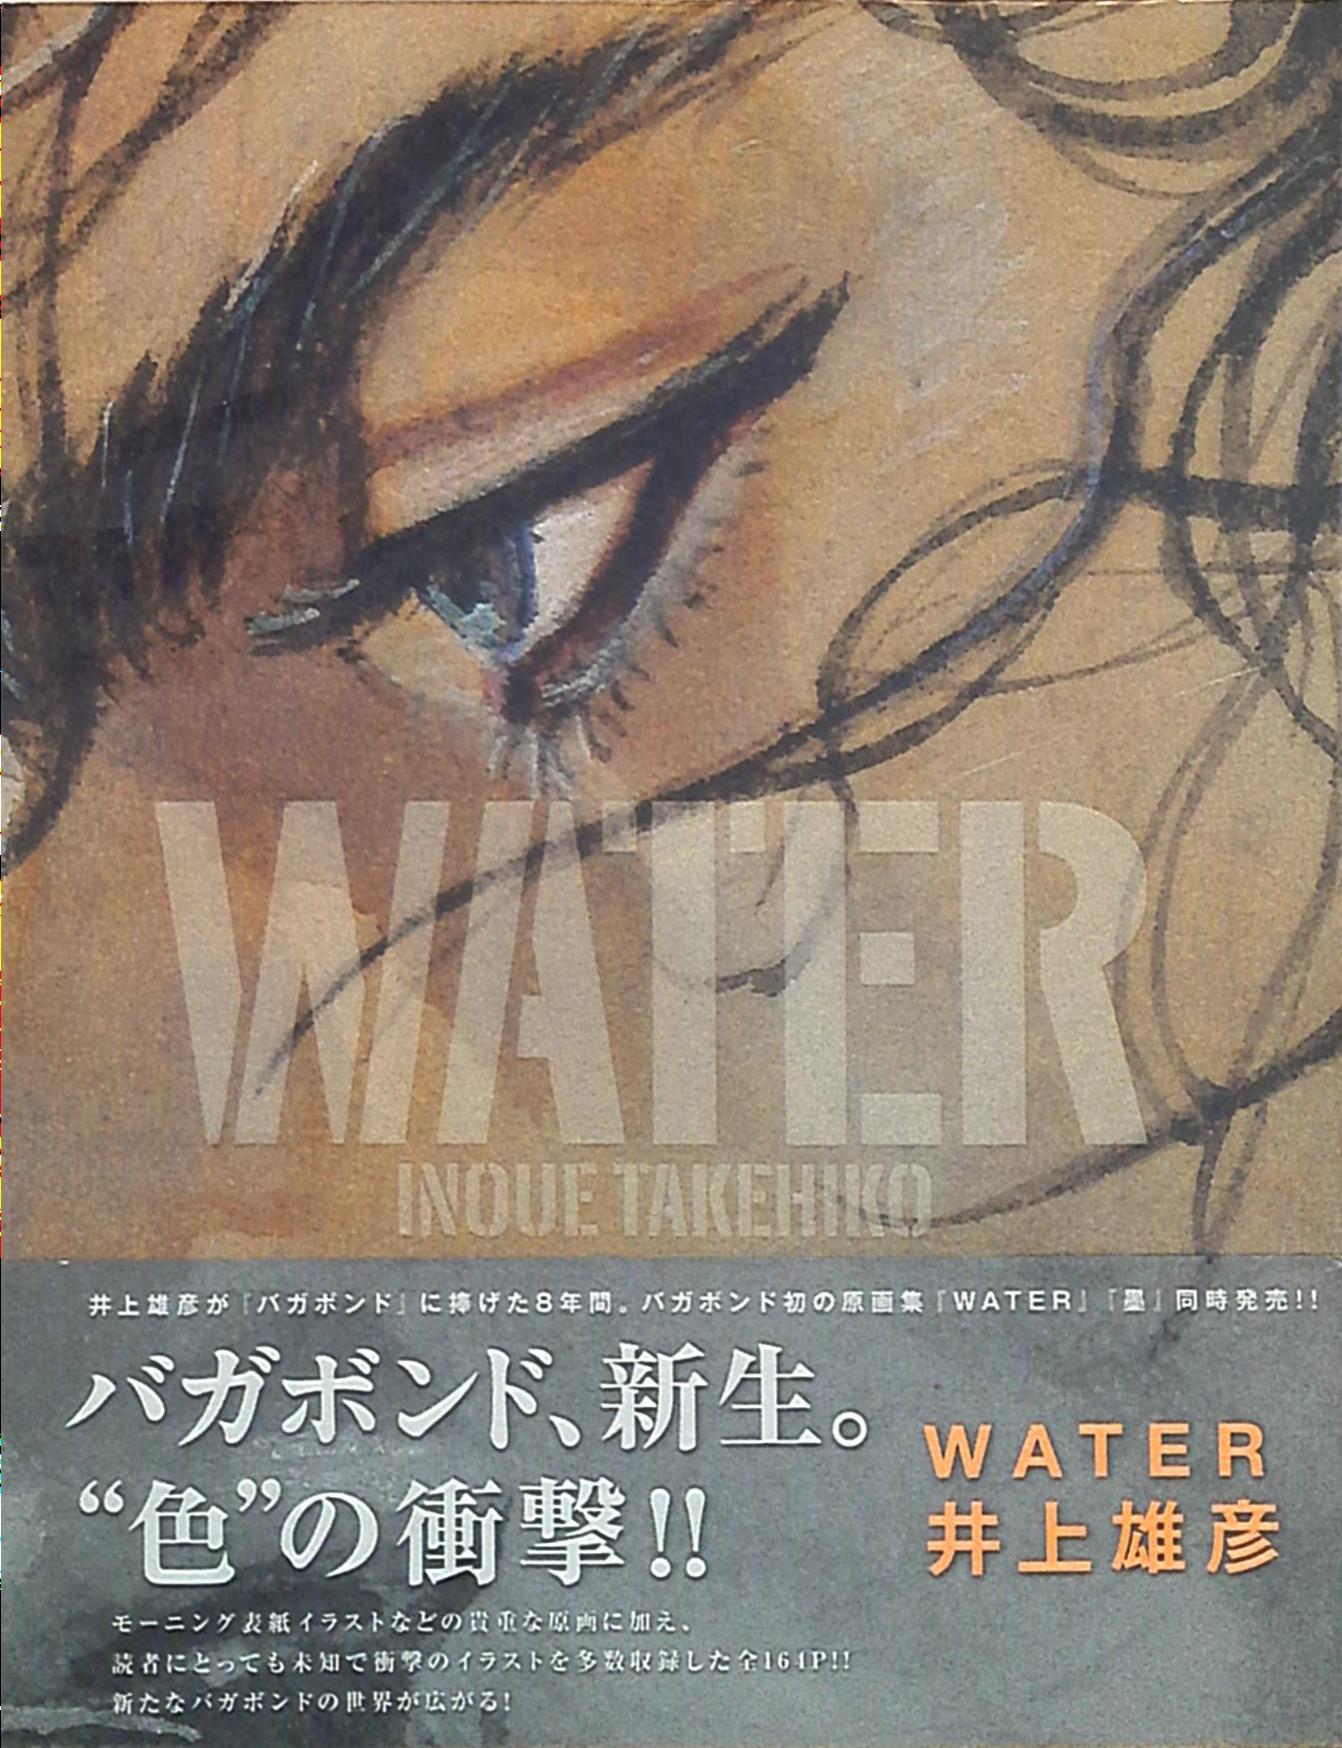 井上雄彦 バガボンド / WATER